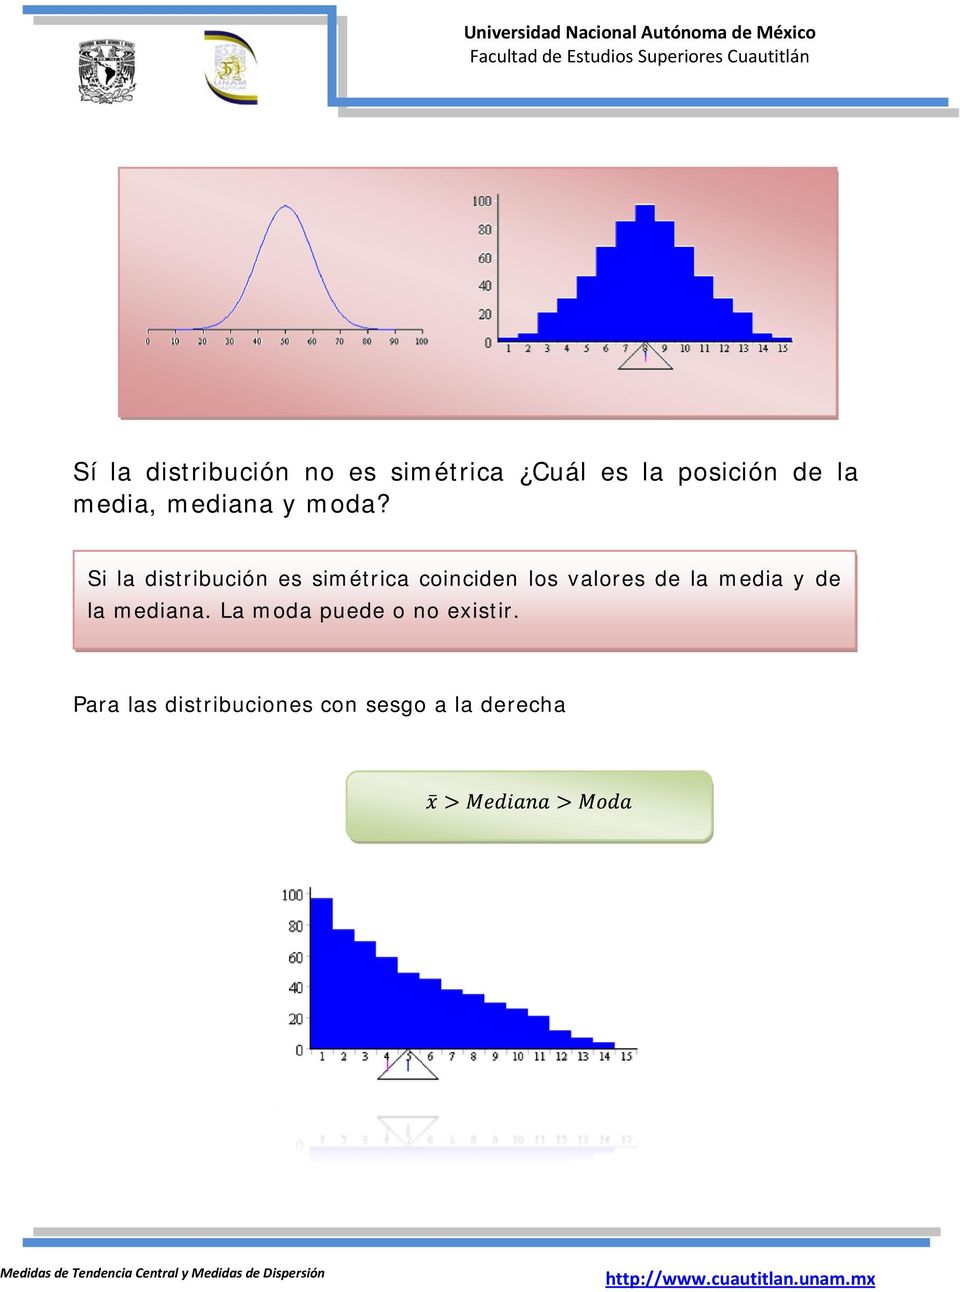 Si la distribución es simétrica coinciden los valores de la